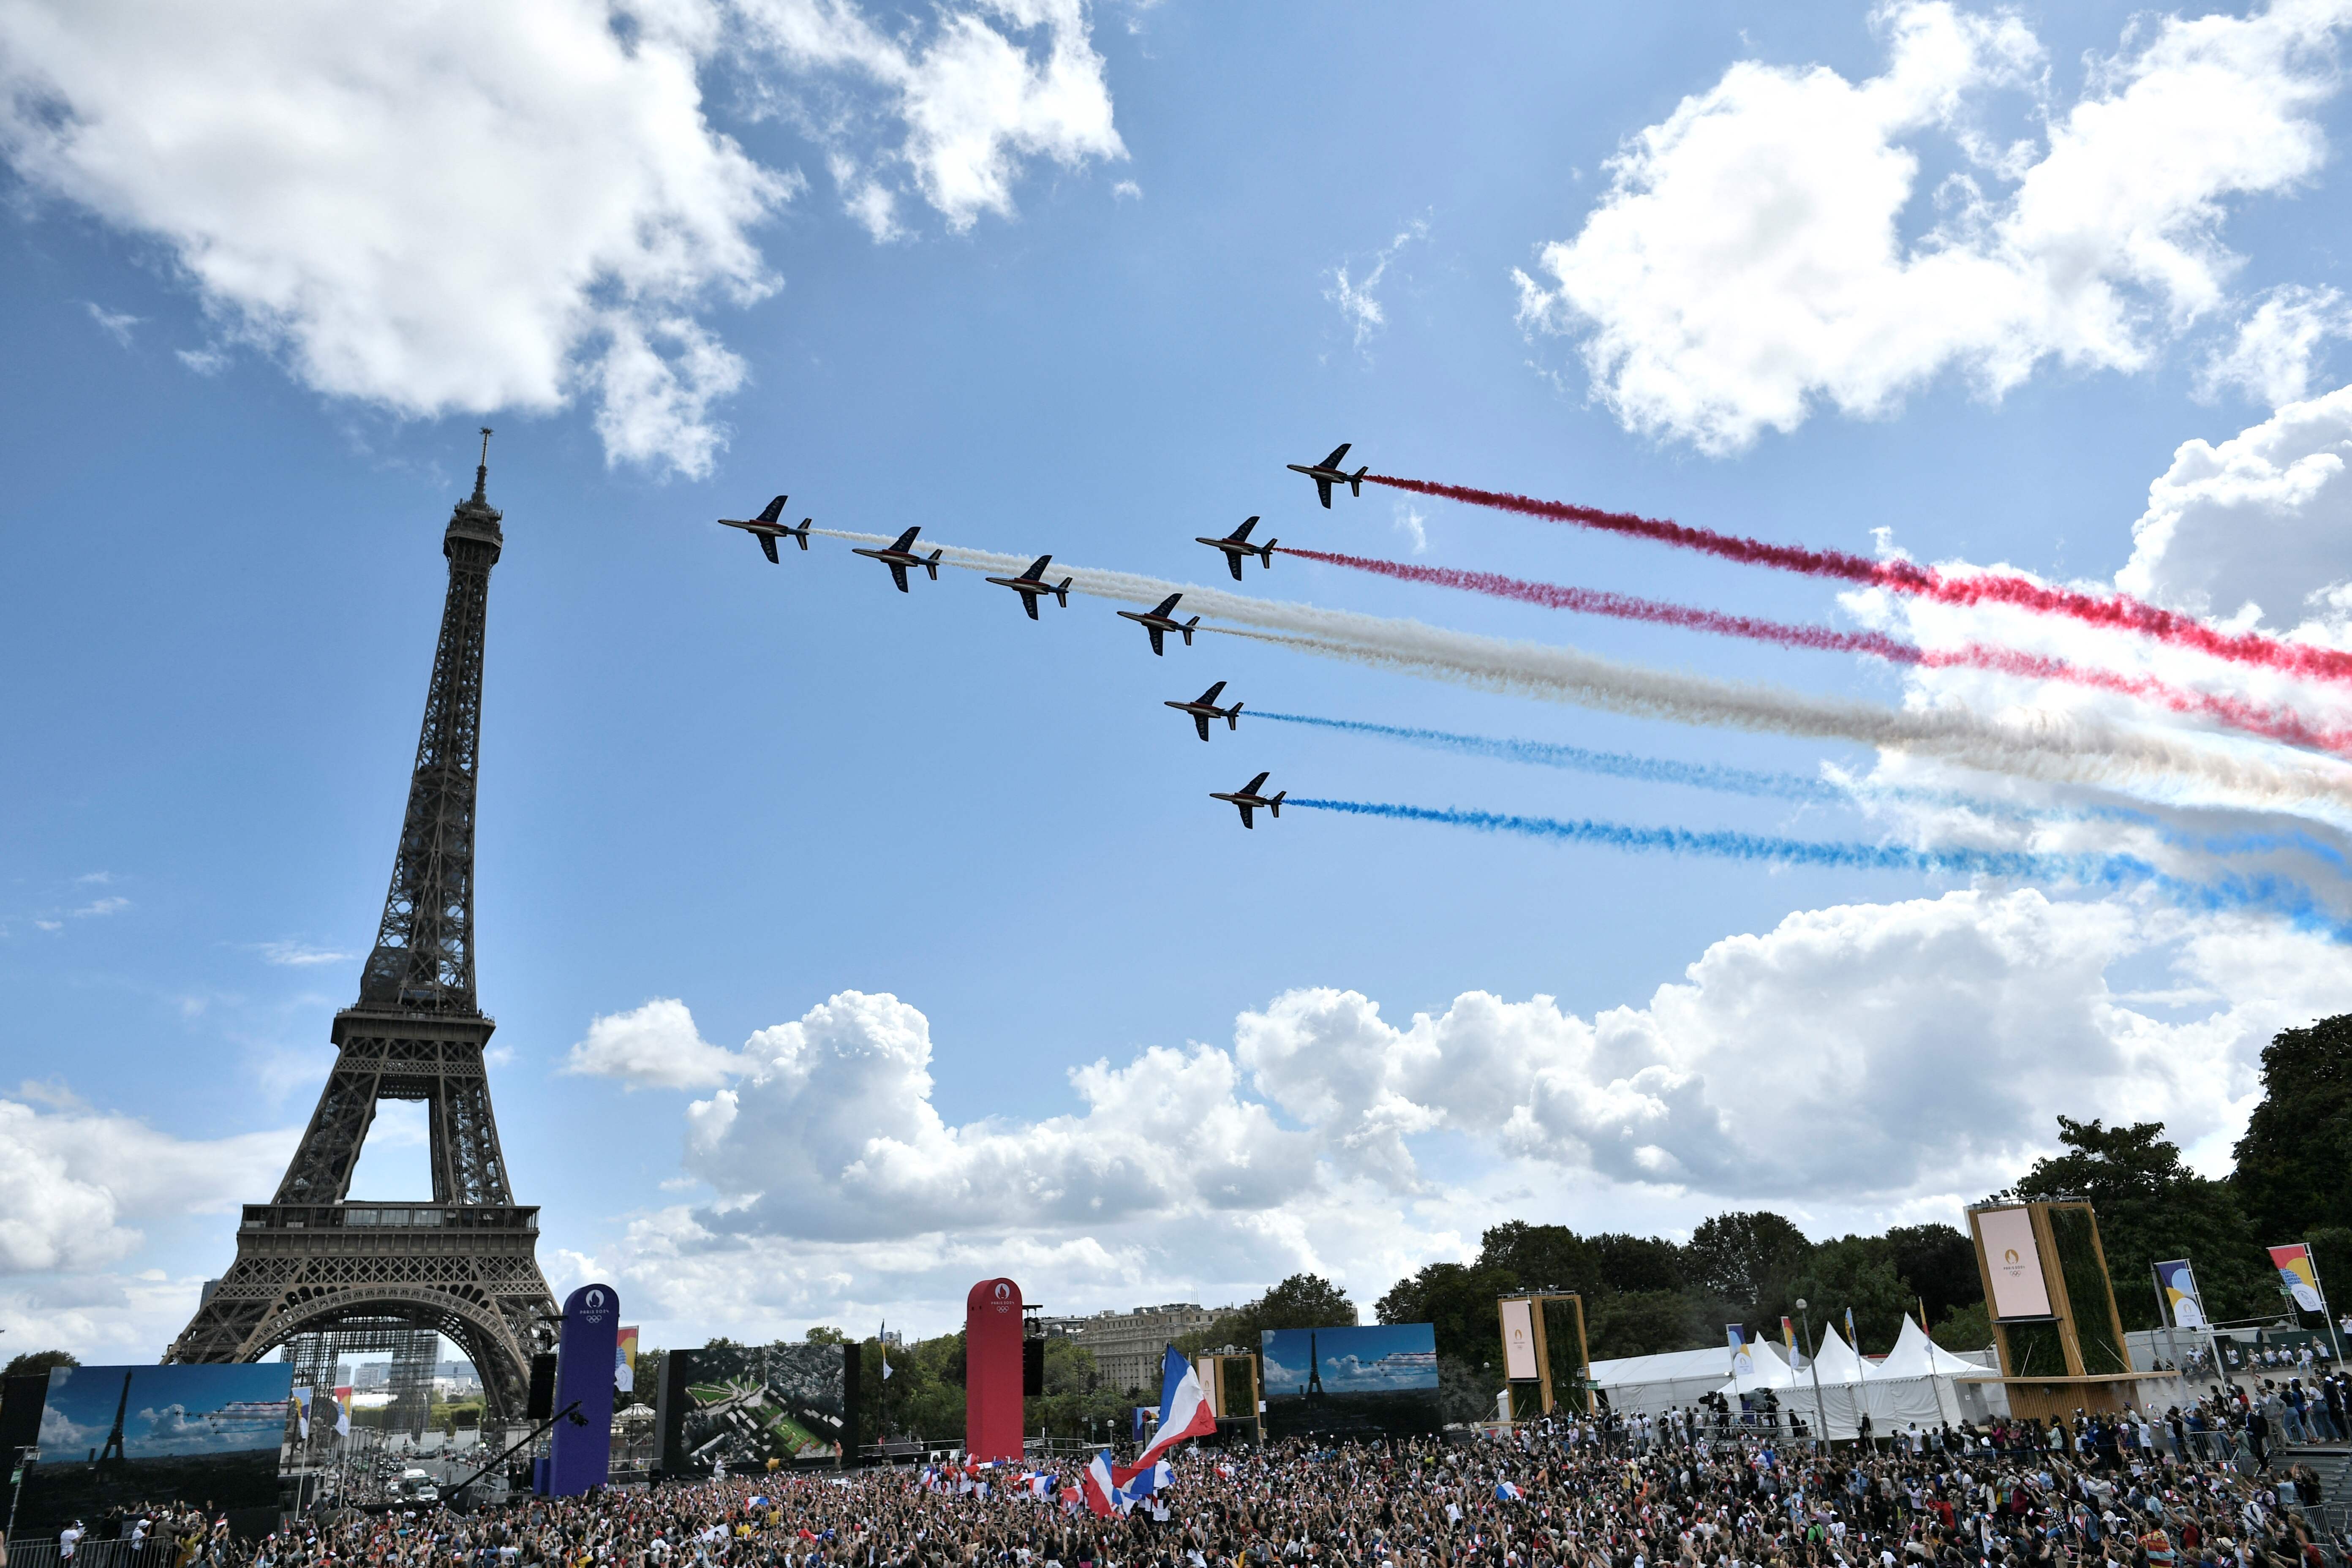 东京奥运闭幕仪式期间，巴黎也同步为2024年举办奥运会而造势，只见喷射着法国国旗颜色烟雾的“法兰西巡逻兵”飞行表演队在埃菲尔铁塔前飞过。（法新社照片）

